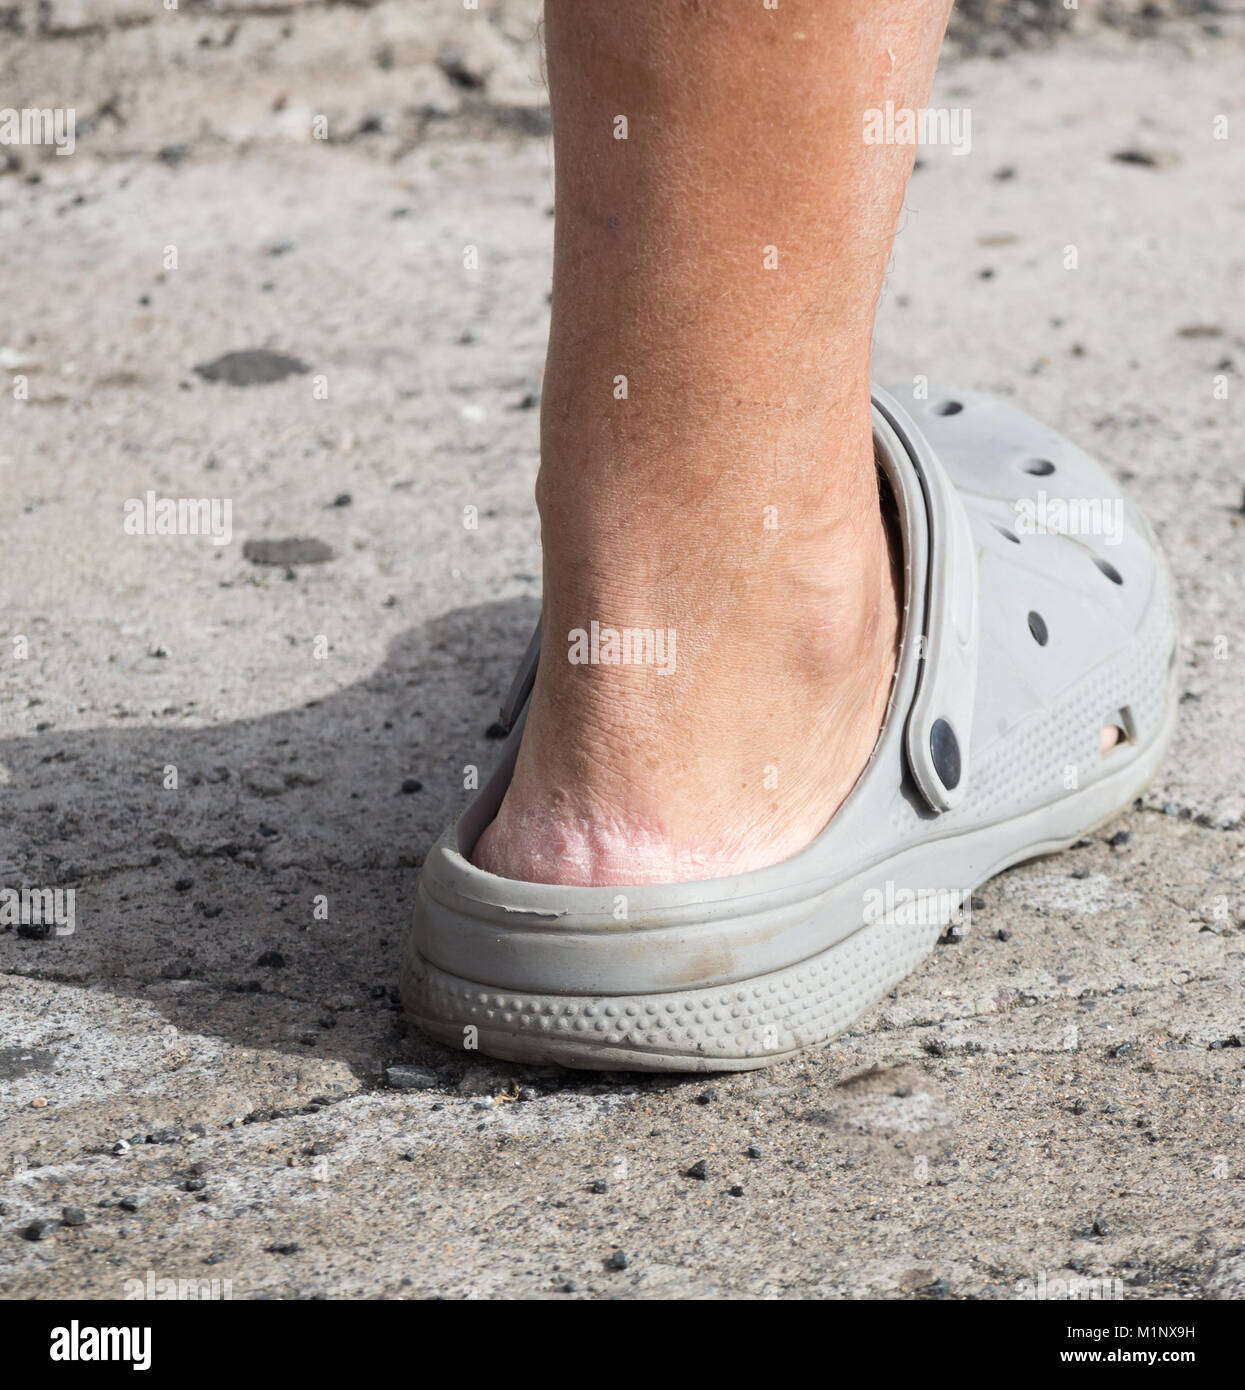 Crocs sandali. Persona che indossa Crocs senza calze. Le lacerazioni della pelle sul tallone Foto Stock